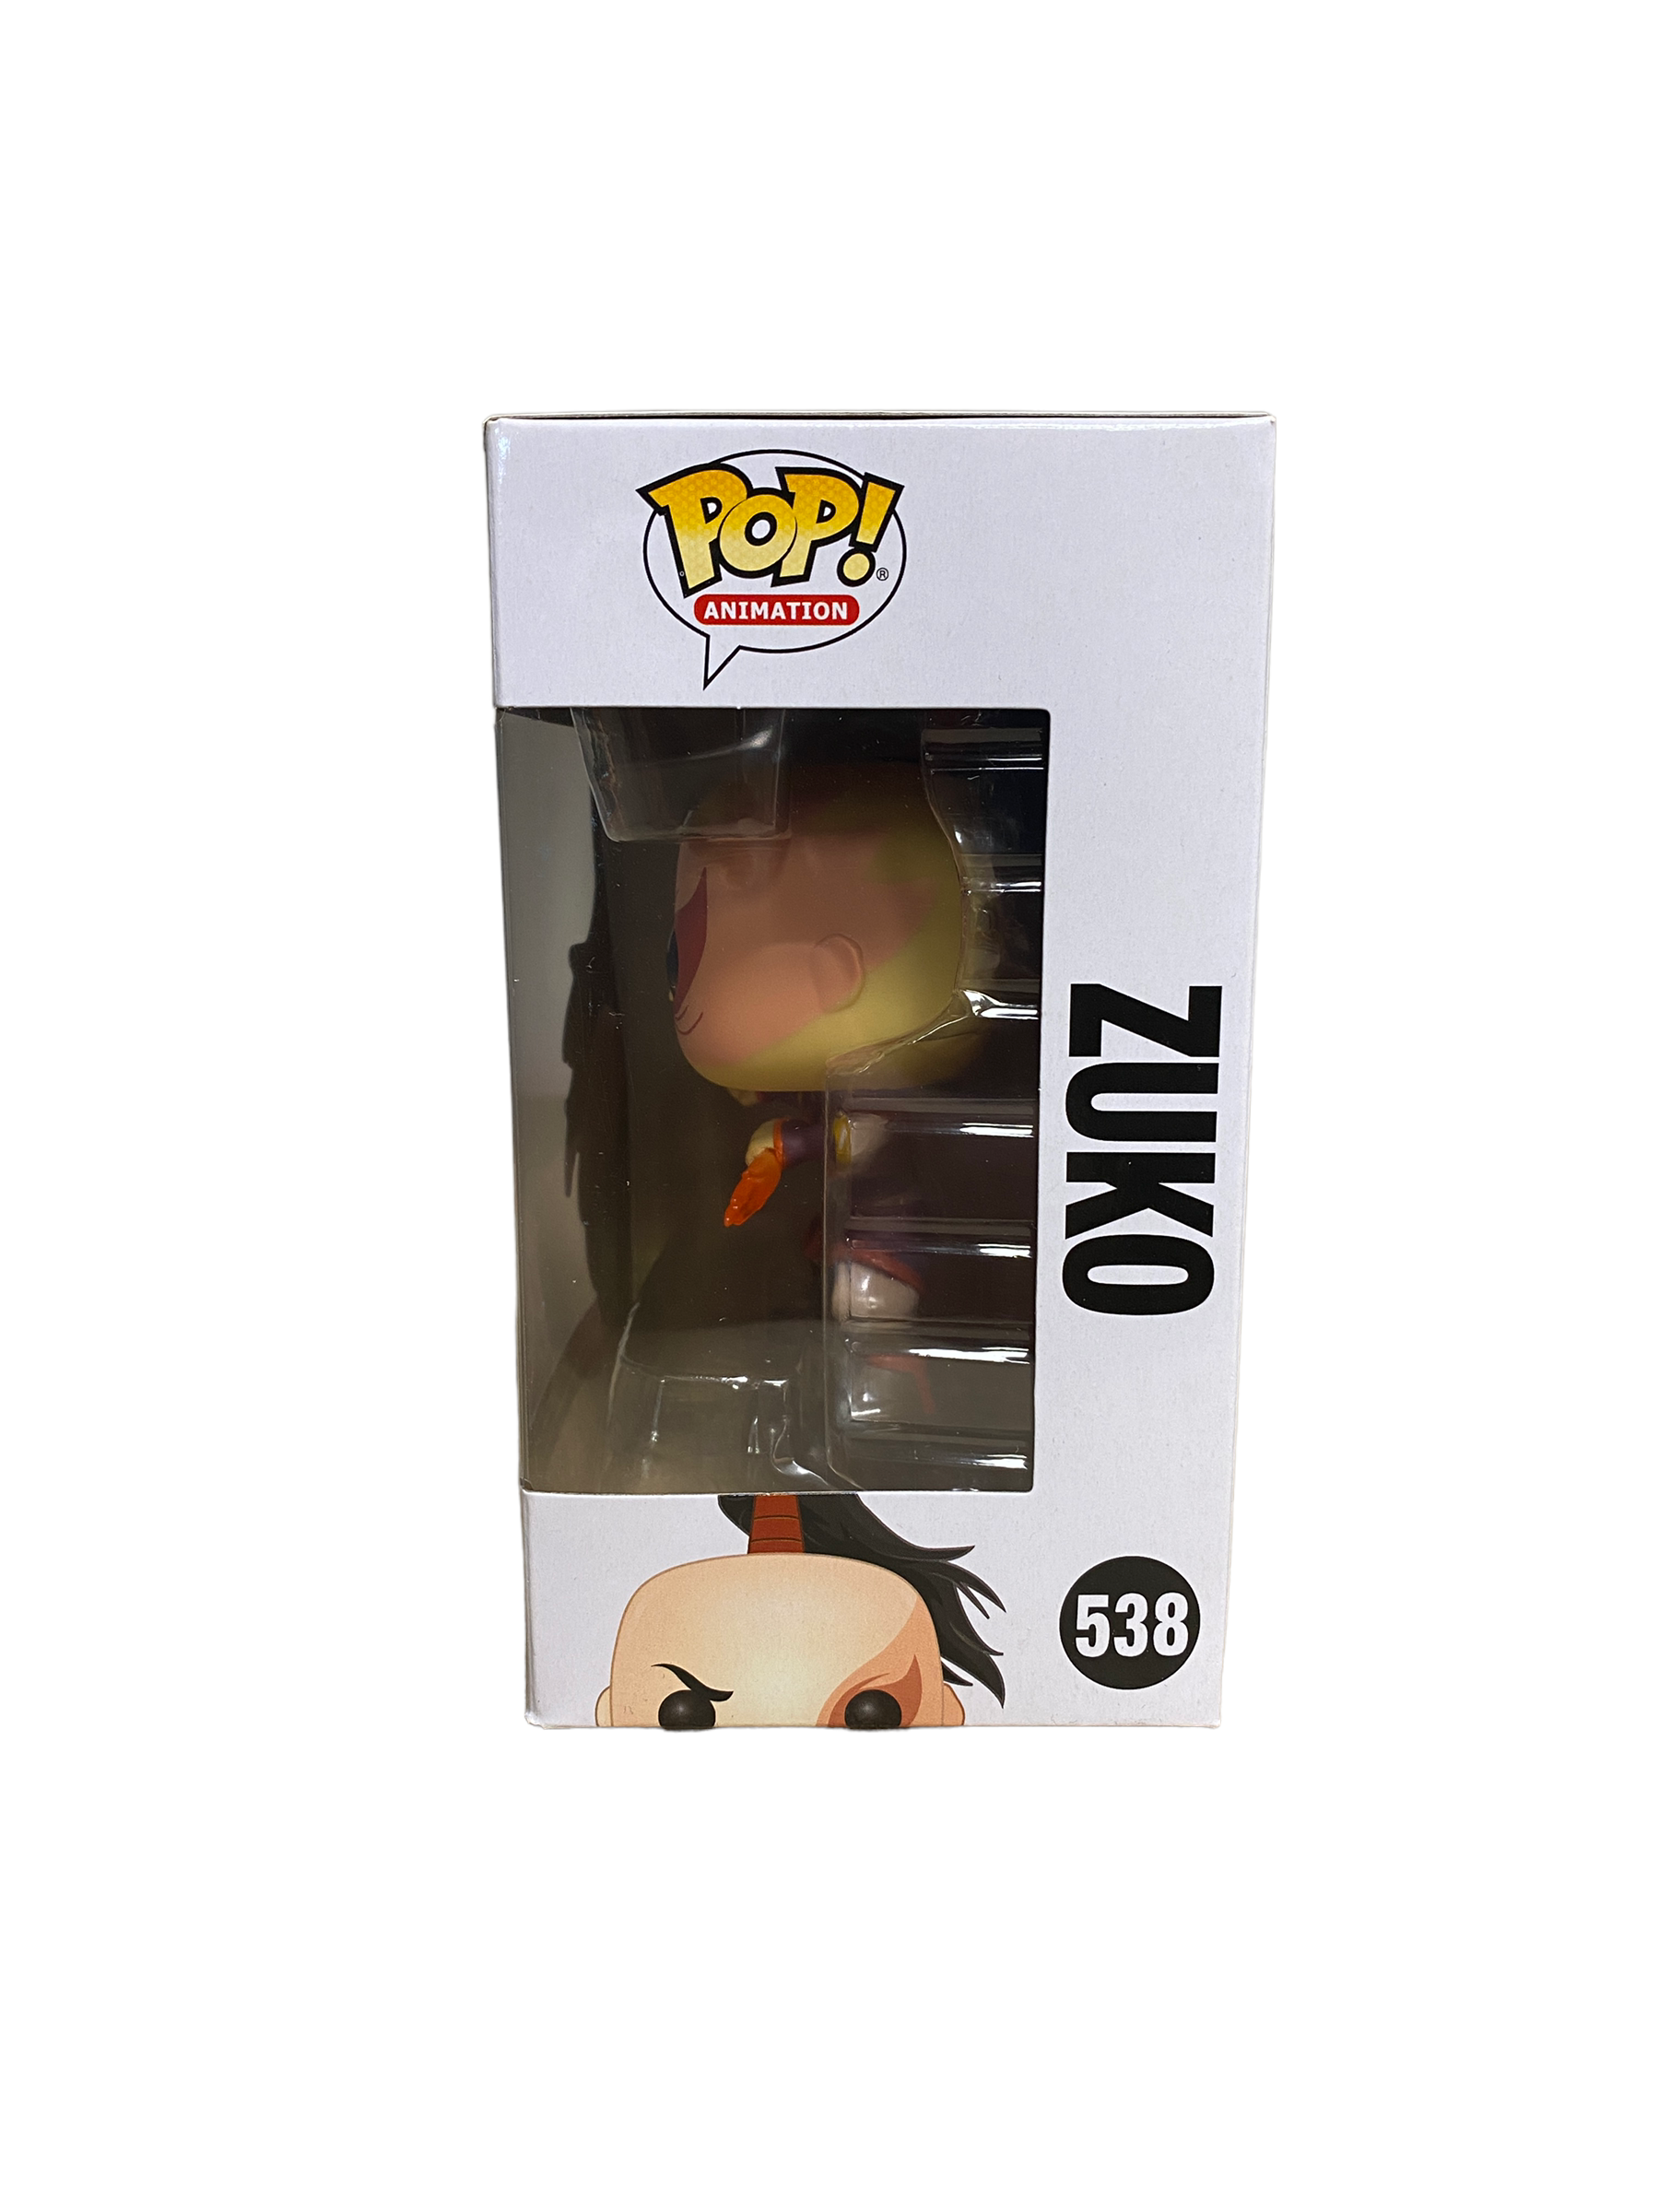 Zuko #538 (Fire Daggers Chase) Funko Pop! - Avatar The Last Airbender - Condition 8.75/10